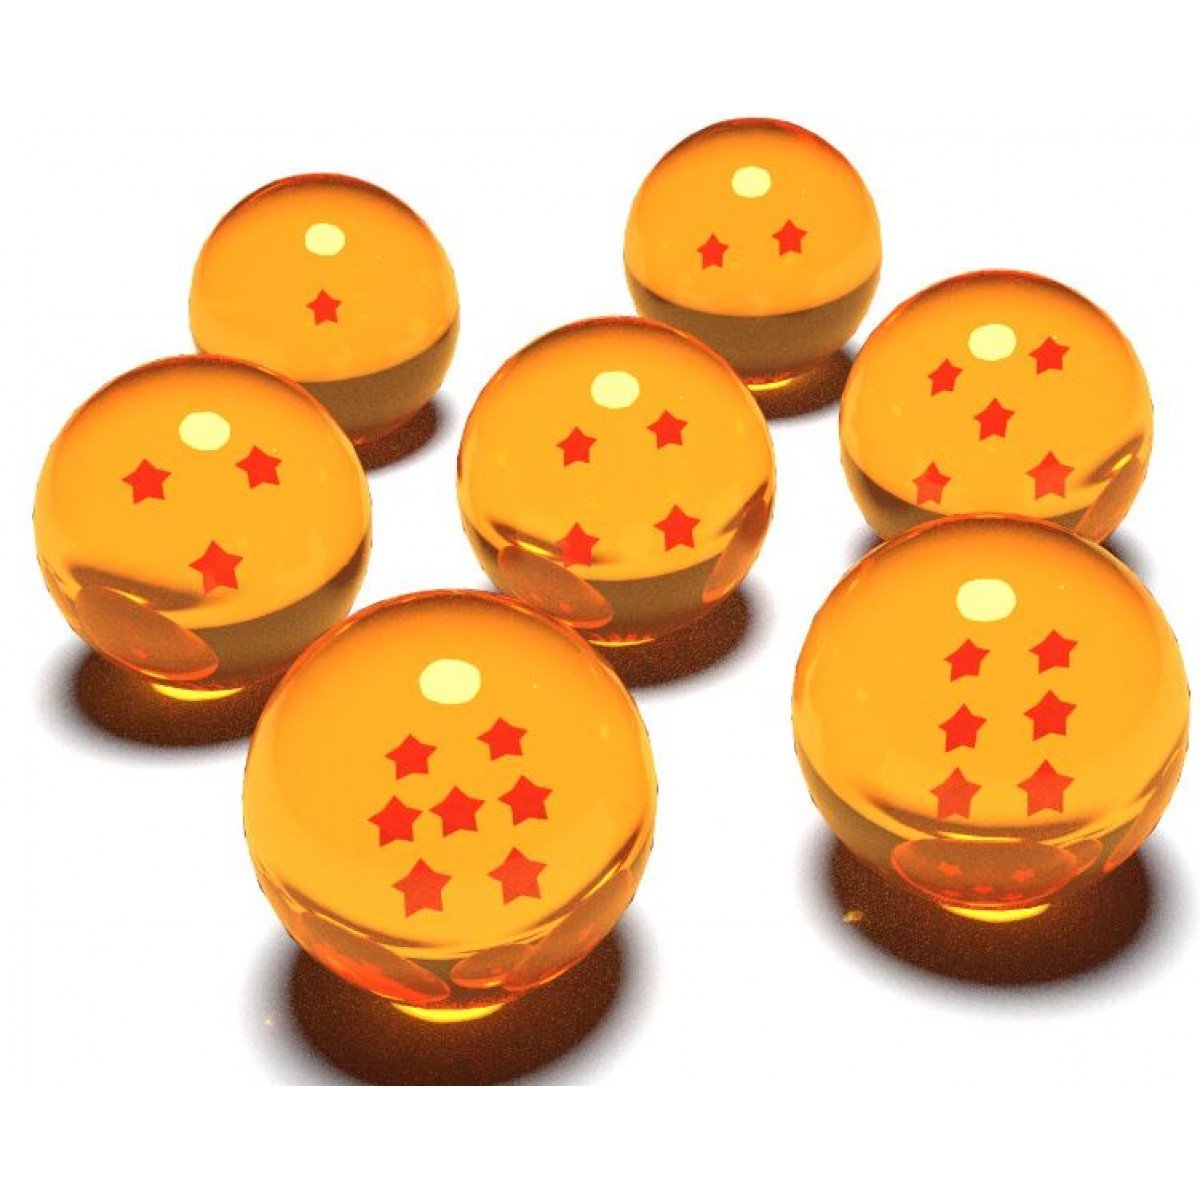 Excelente Lote de 7 esferas do Dragão de ótima qualidade tamanho 3.5 cm